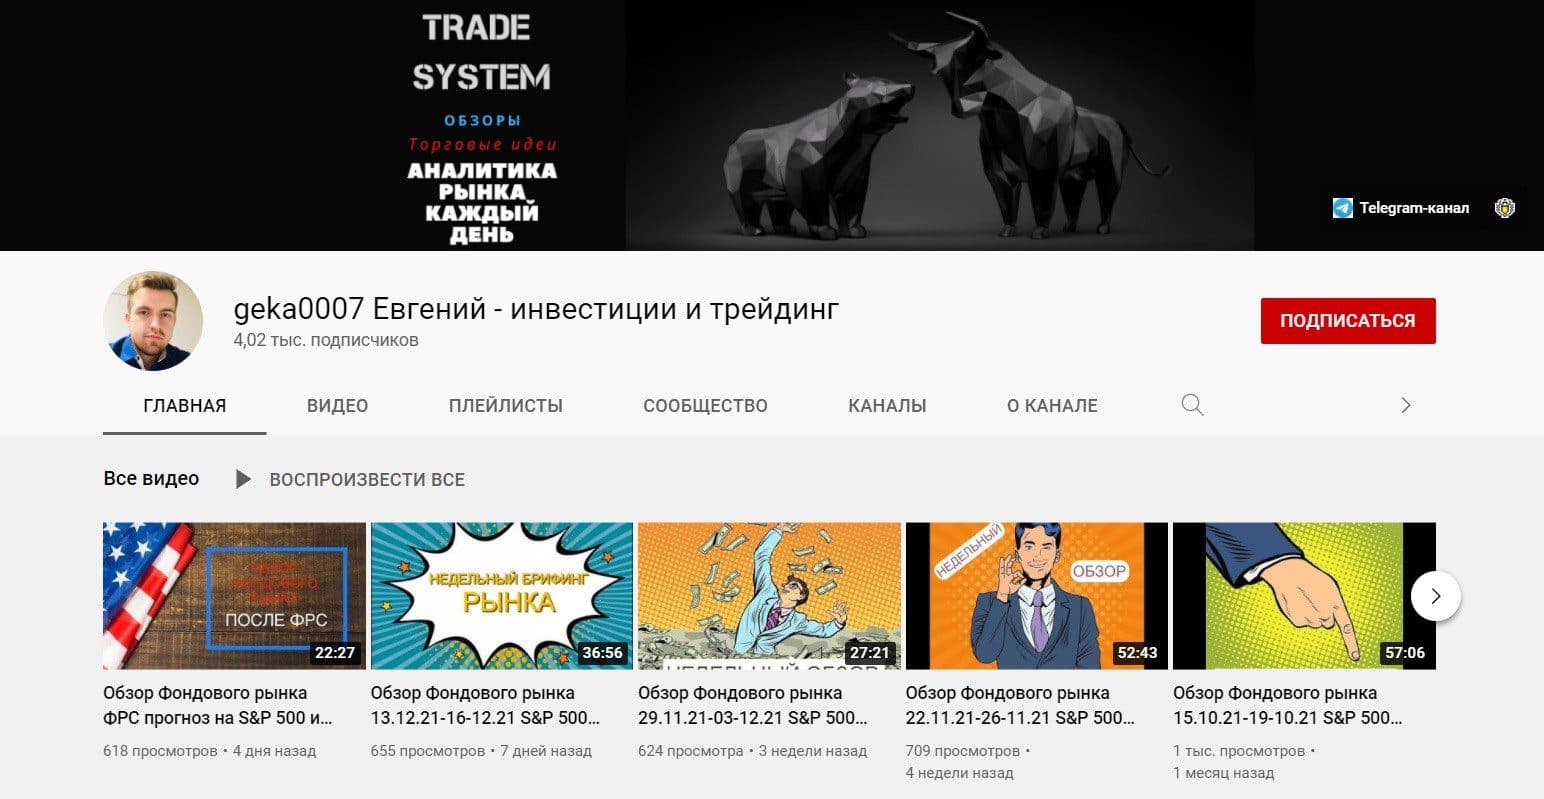 Ютуб-канал проекта Trade System